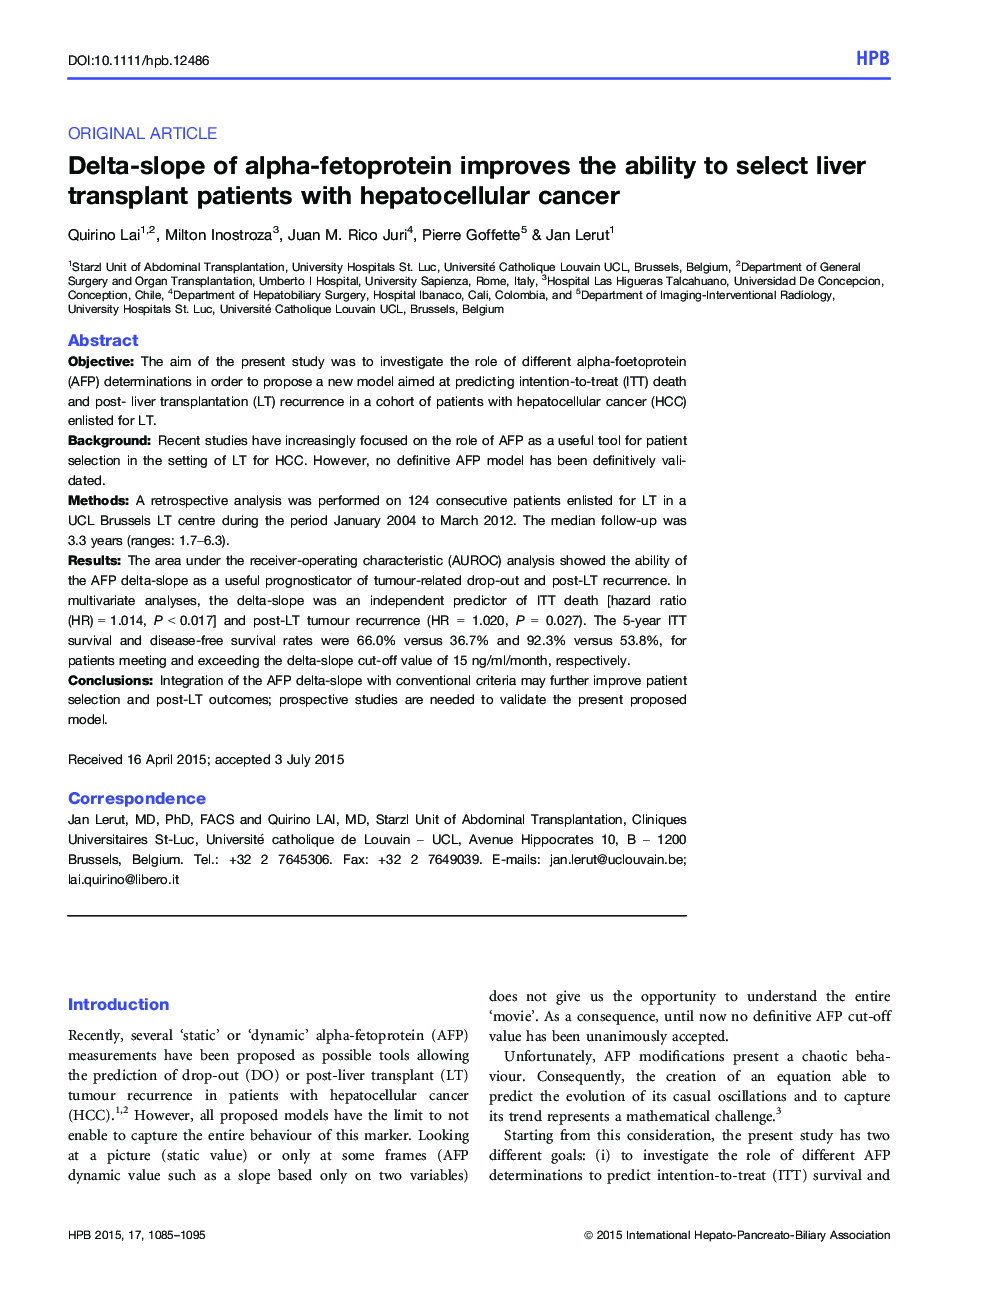 Deltaâslope of alphaâfetoprotein improves the ability to select liver transplant patients with hepatocellular cancer